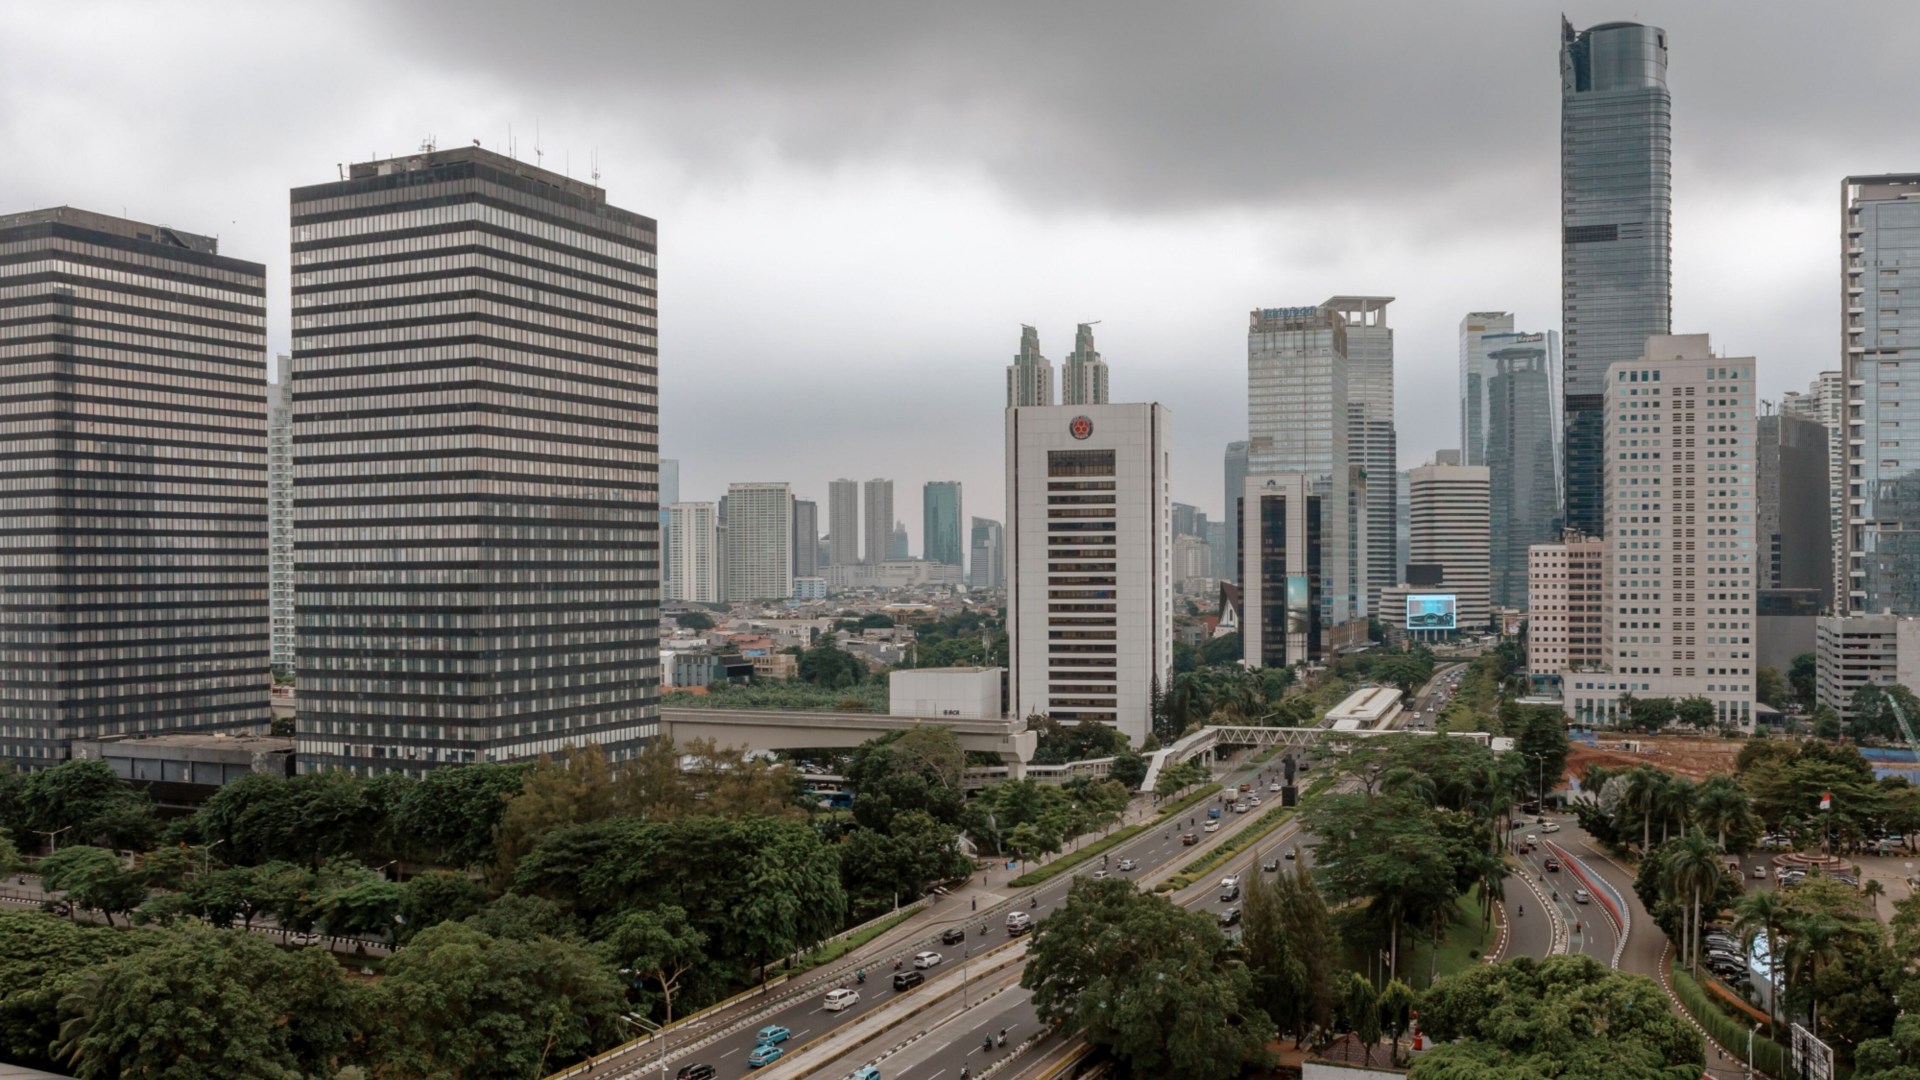  Pertumbuhan Ekonomi Indonesia Melambat dan Stagnan sejak 2003, Ini Biang Keroknya